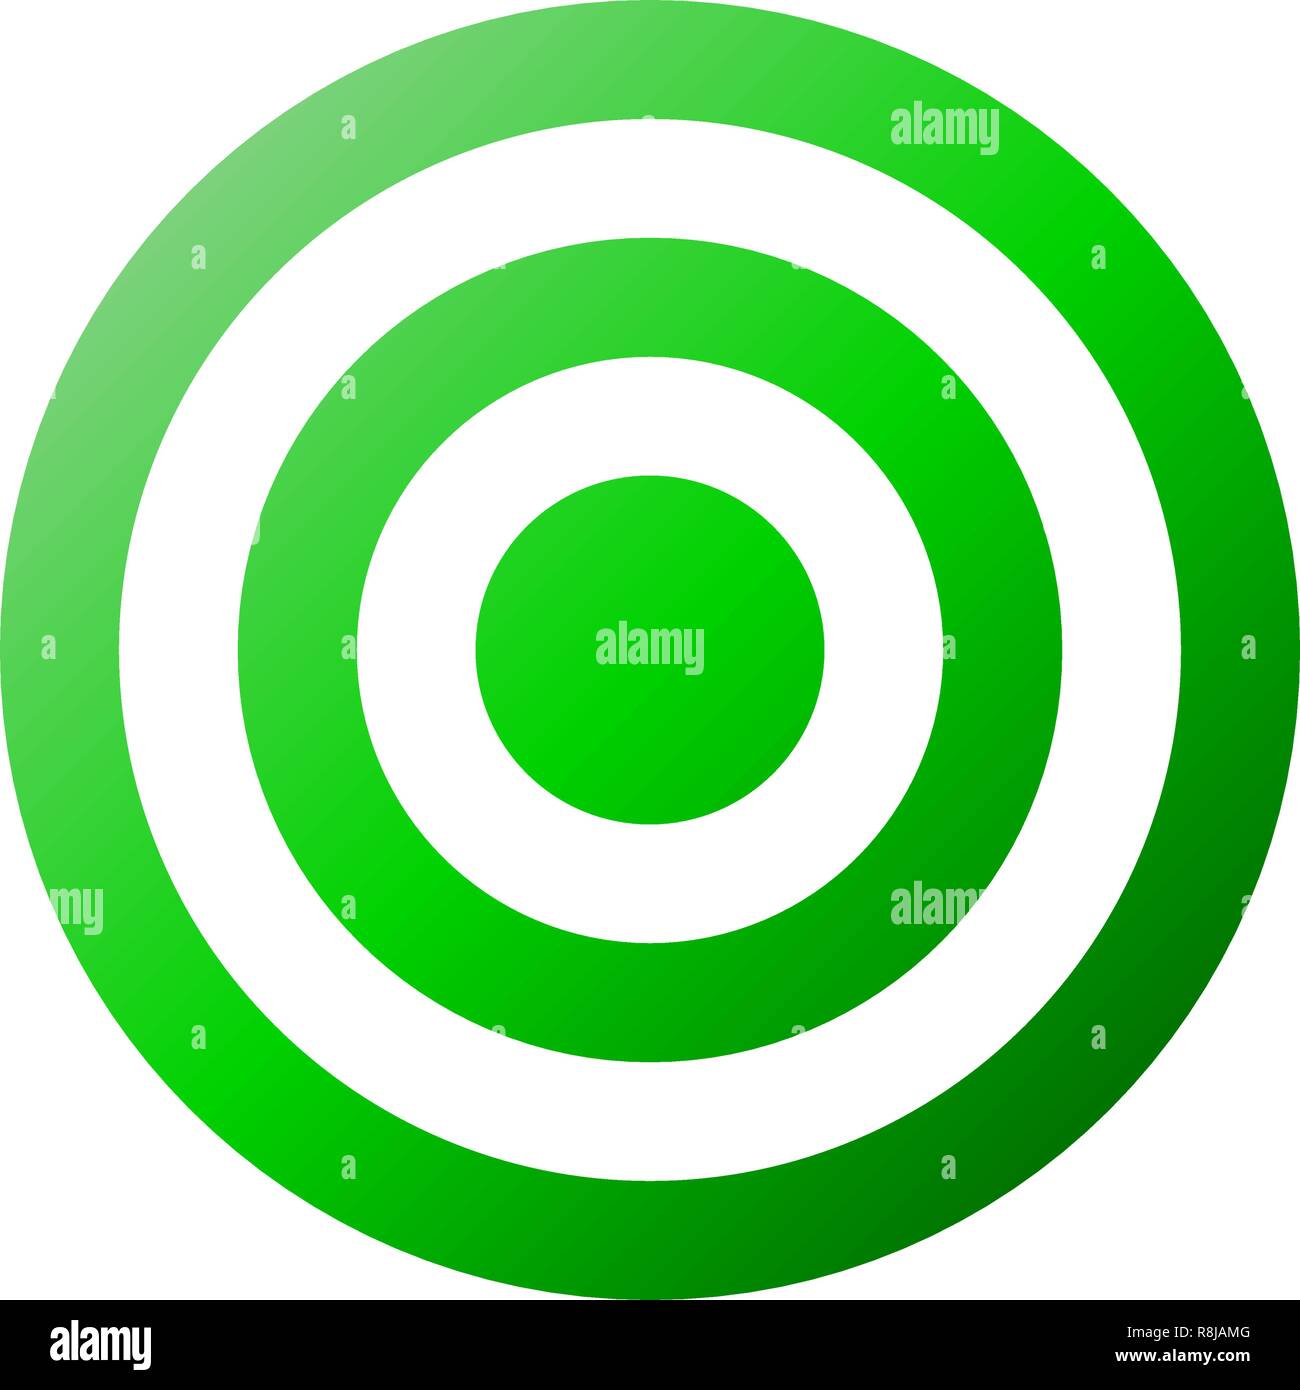 Segno di destinazione - gradiente verde trasparente, isolato - illustrazione vettoriale Illustrazione Vettoriale